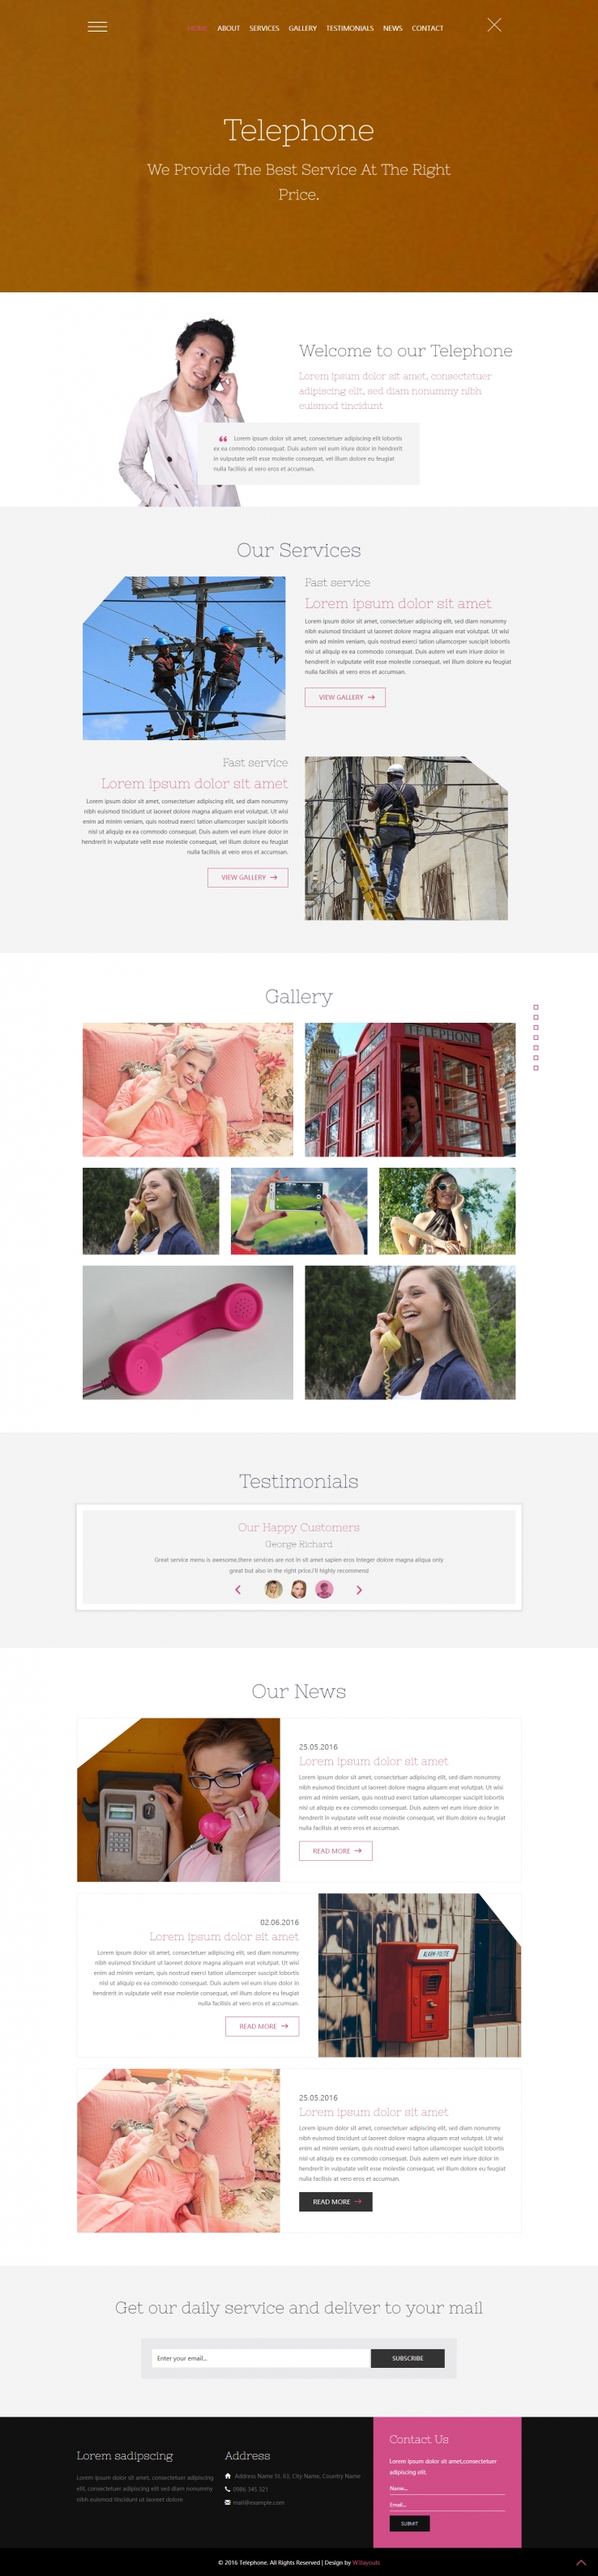 粉色简洁风格的电话通信建设整站网站源码下载